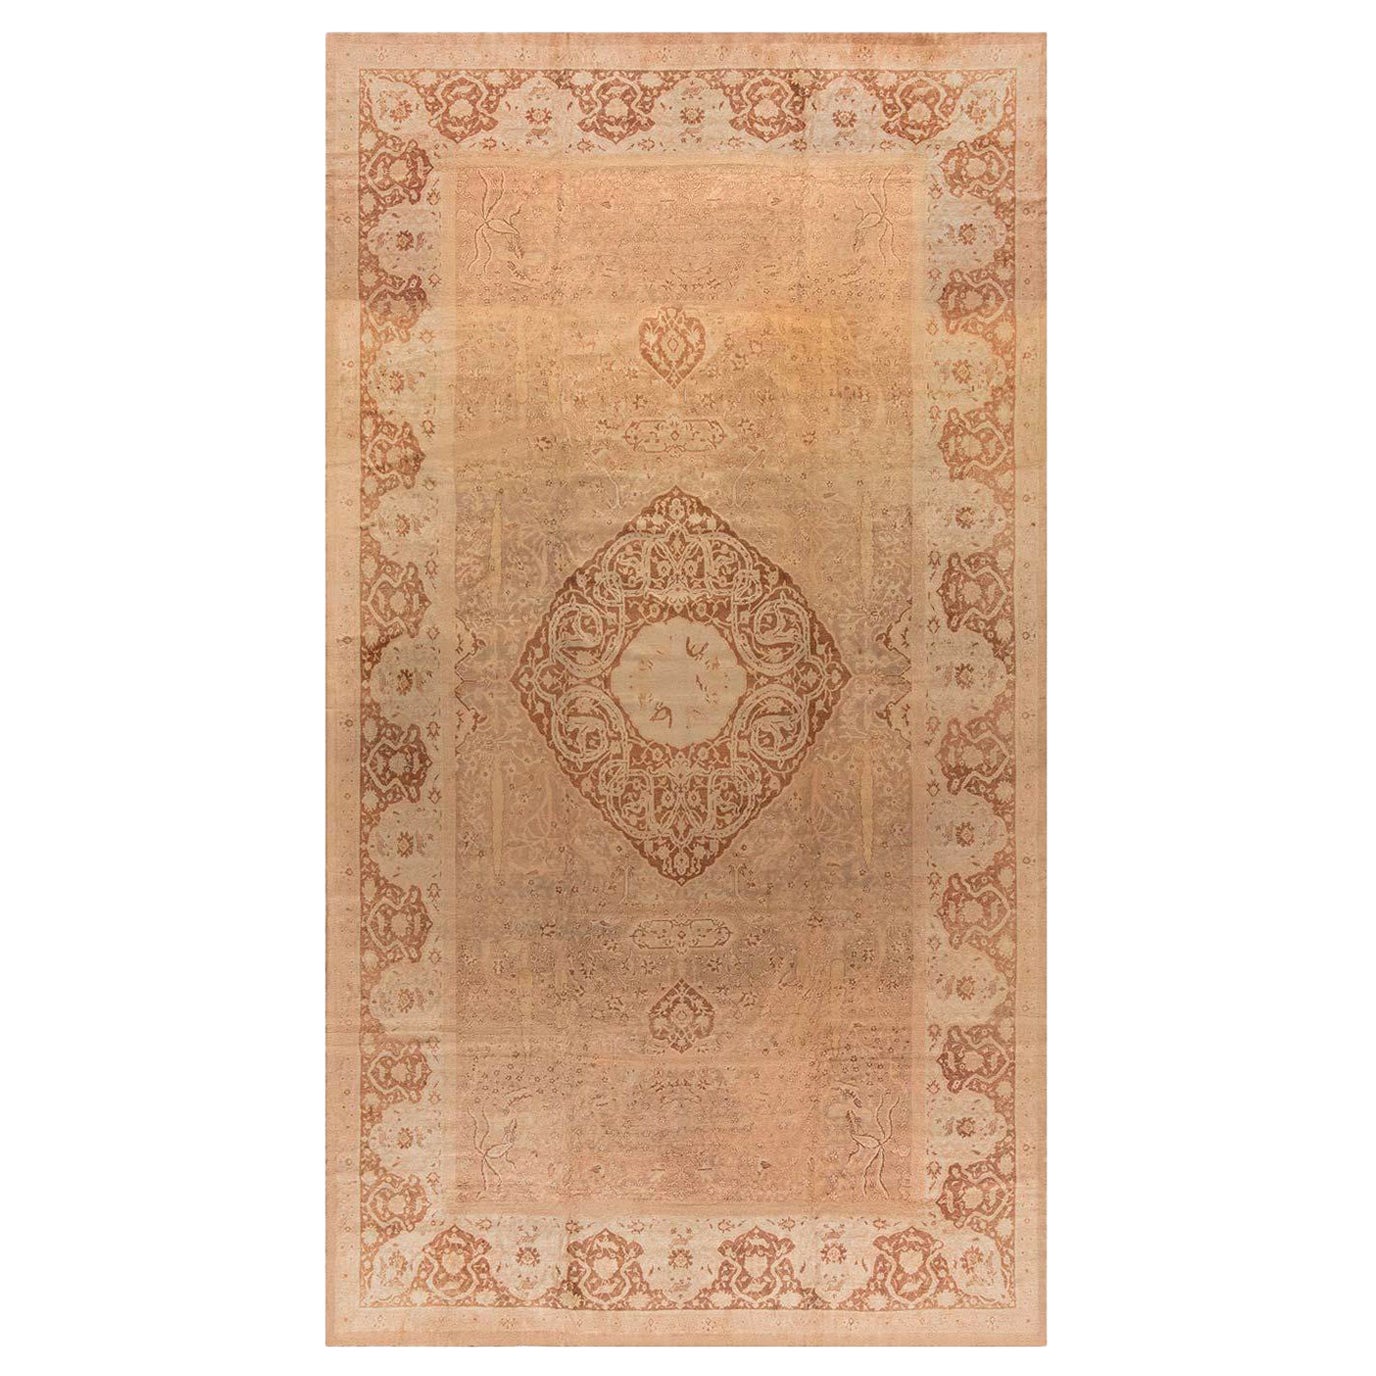 Authentique tapis indien Amritsar du 19ème siècle